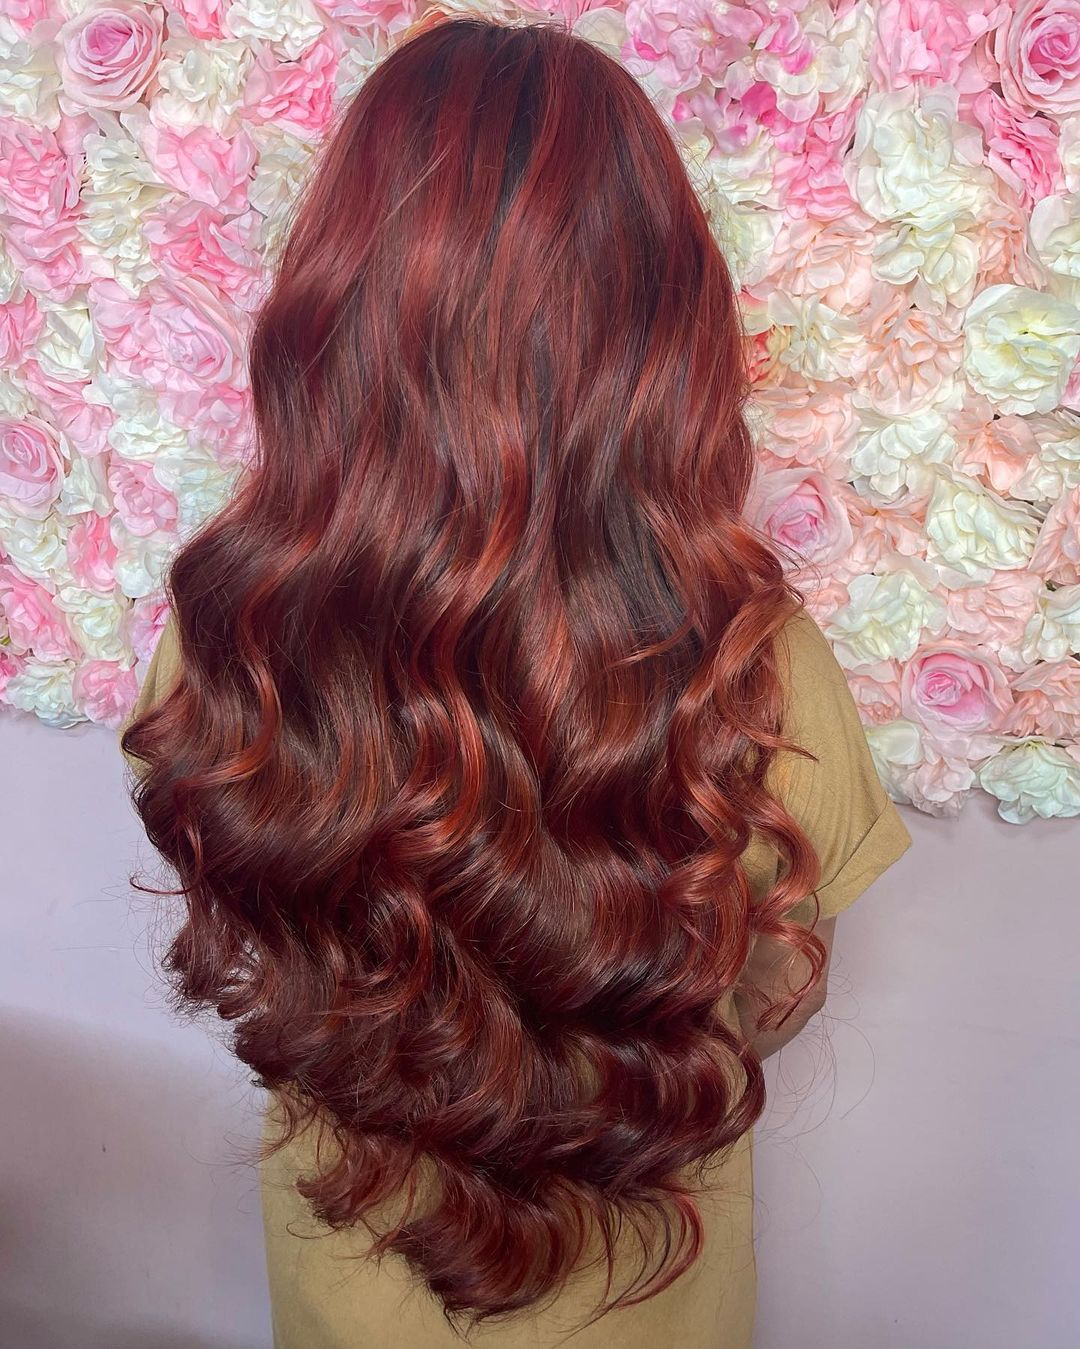 cheveux de sirène bruns avec mèches rouges